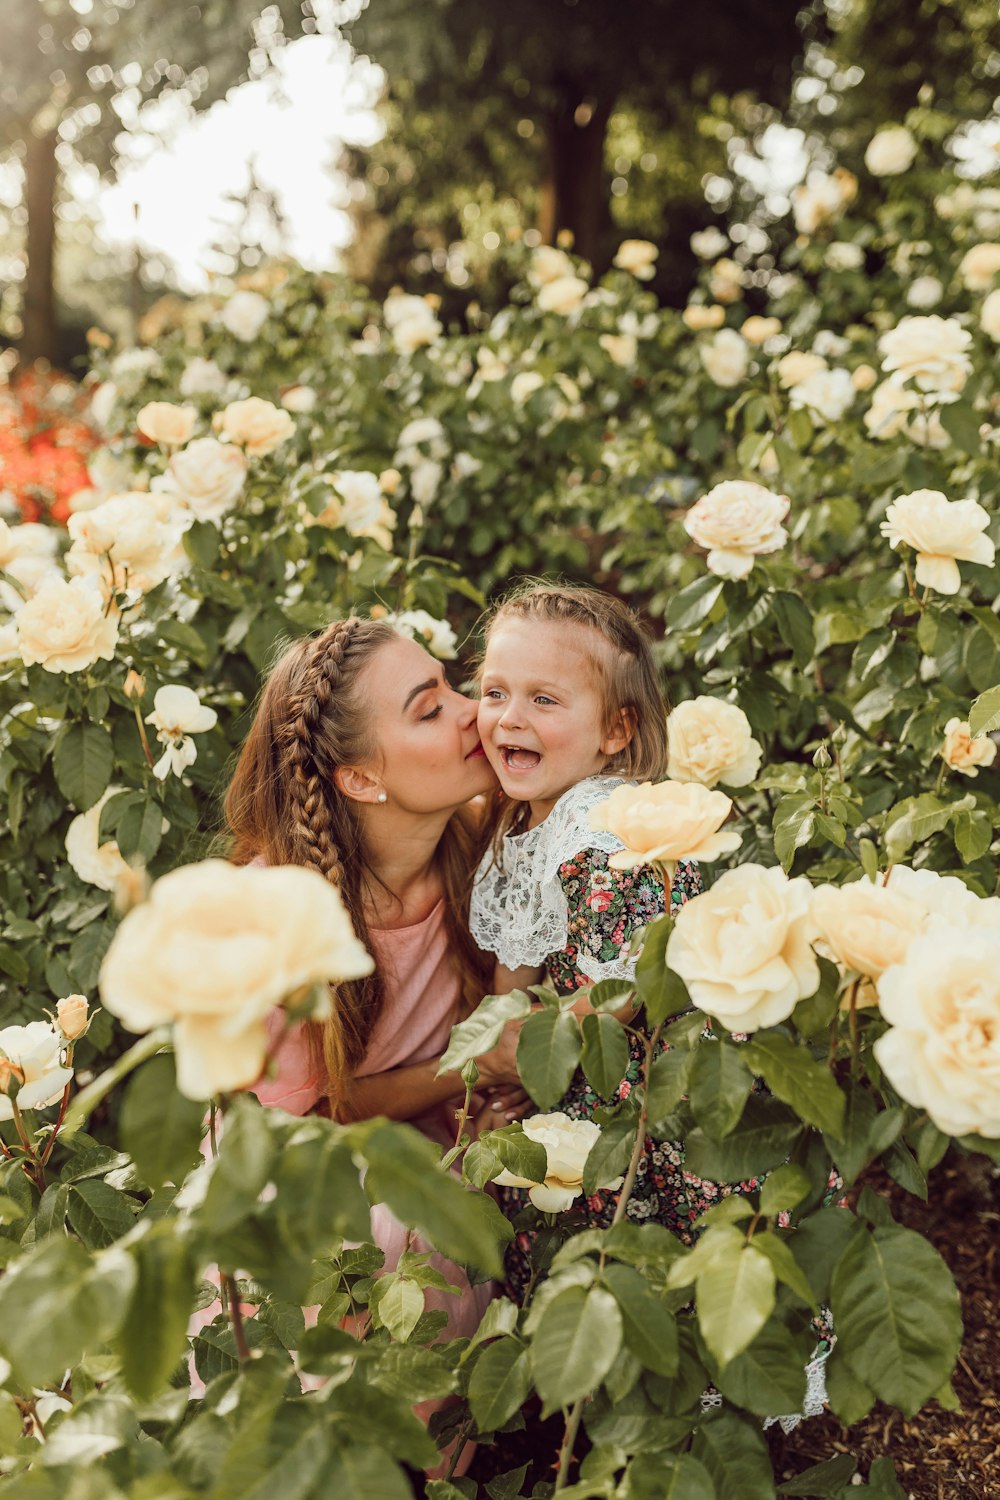 donna che bacia la guancia della ragazza tra il giardino di rose bianche